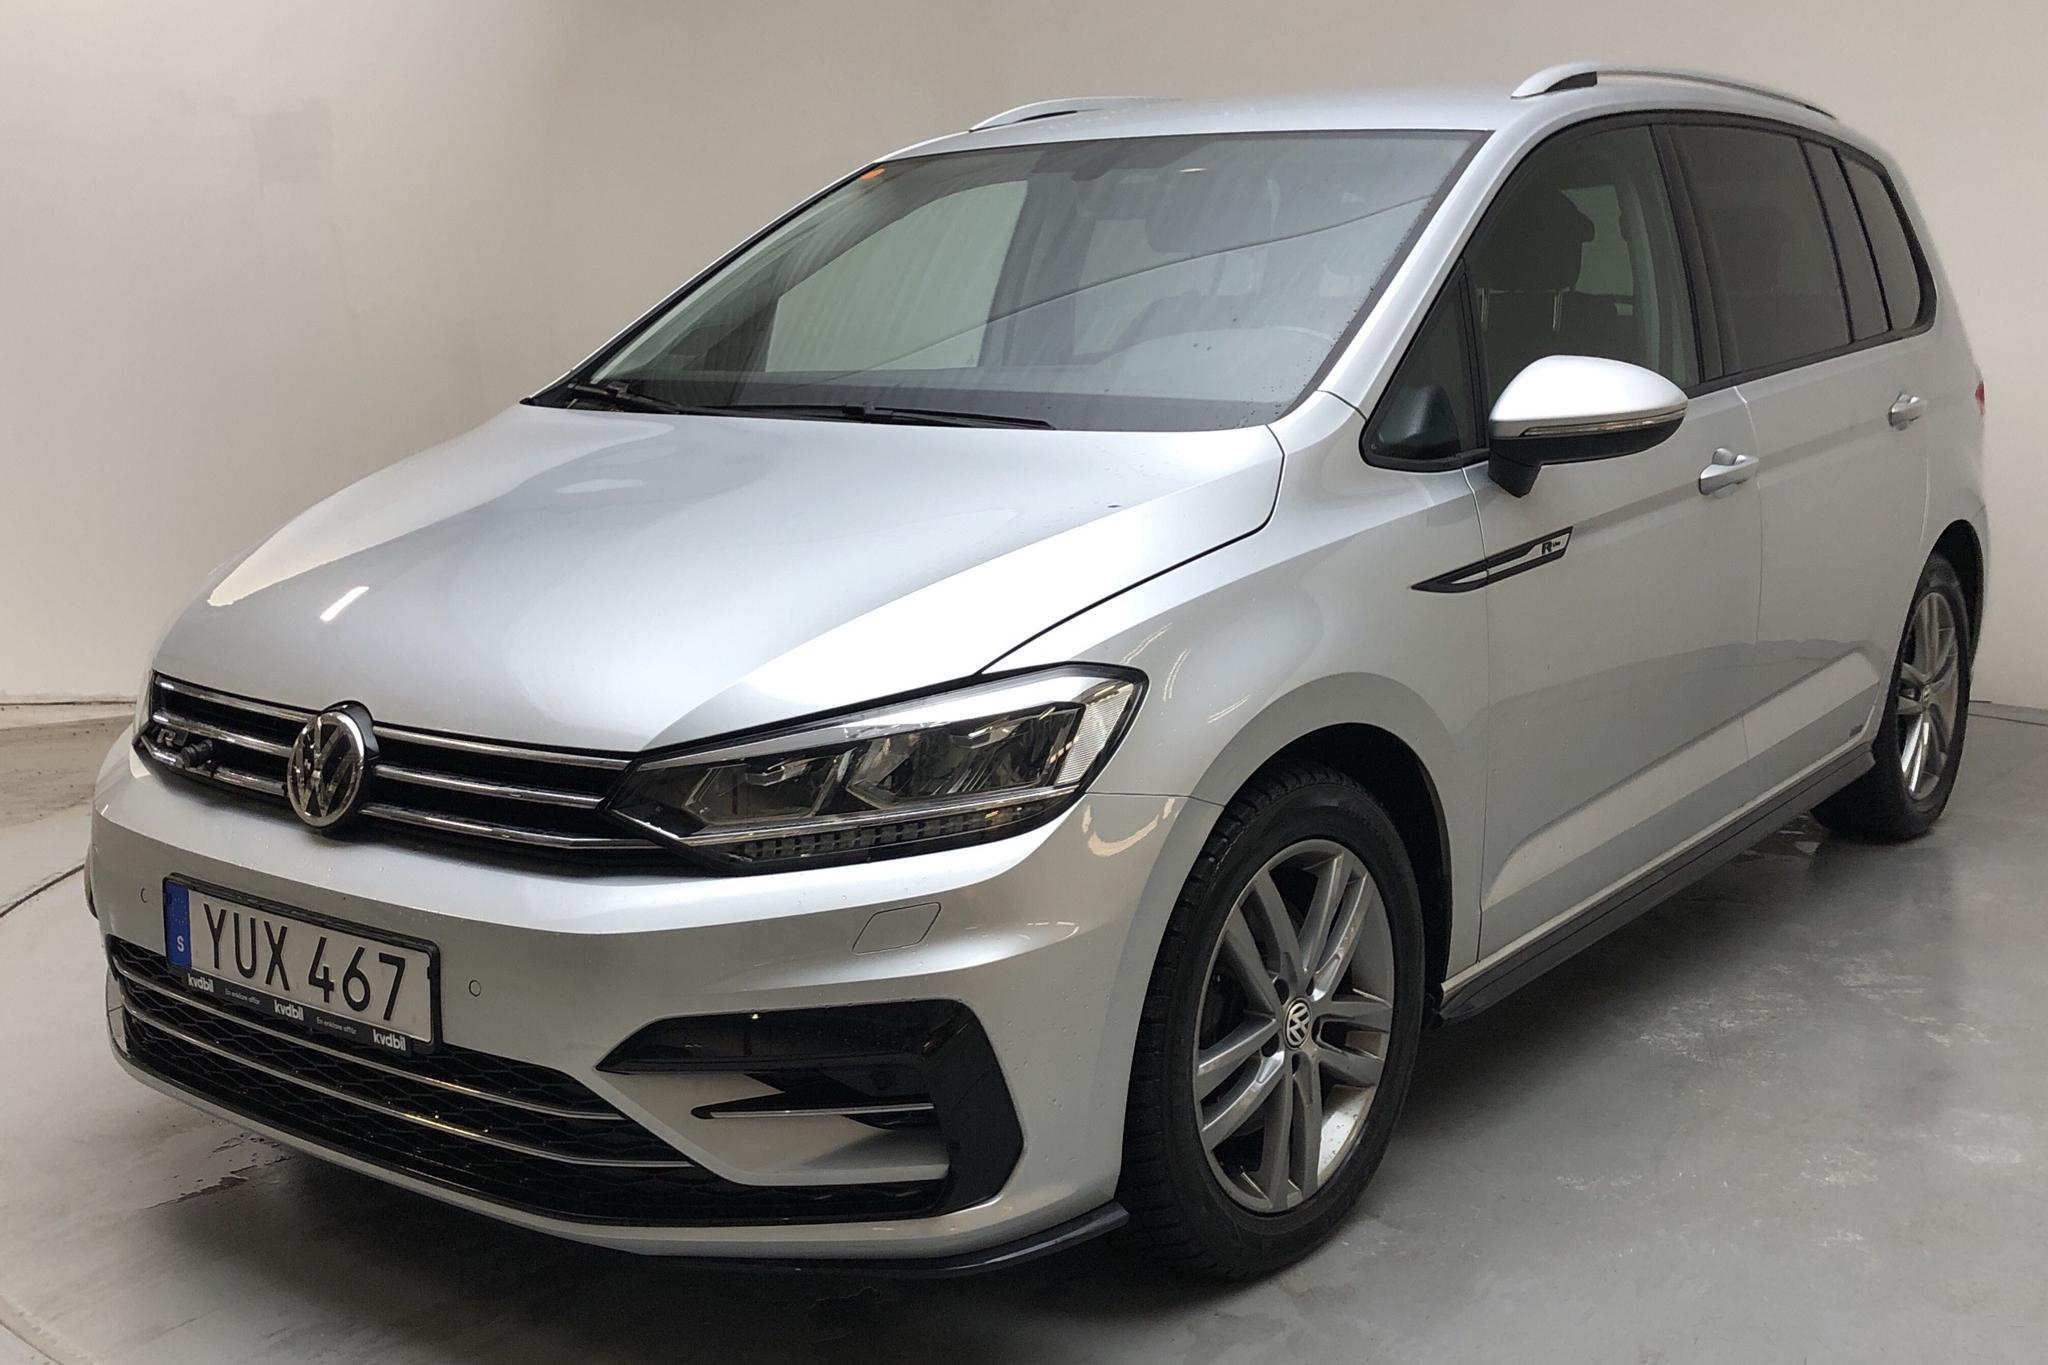 VW Touran 1.4 TSI (150hk) - 51 280 km - Automatic - silver - 2018